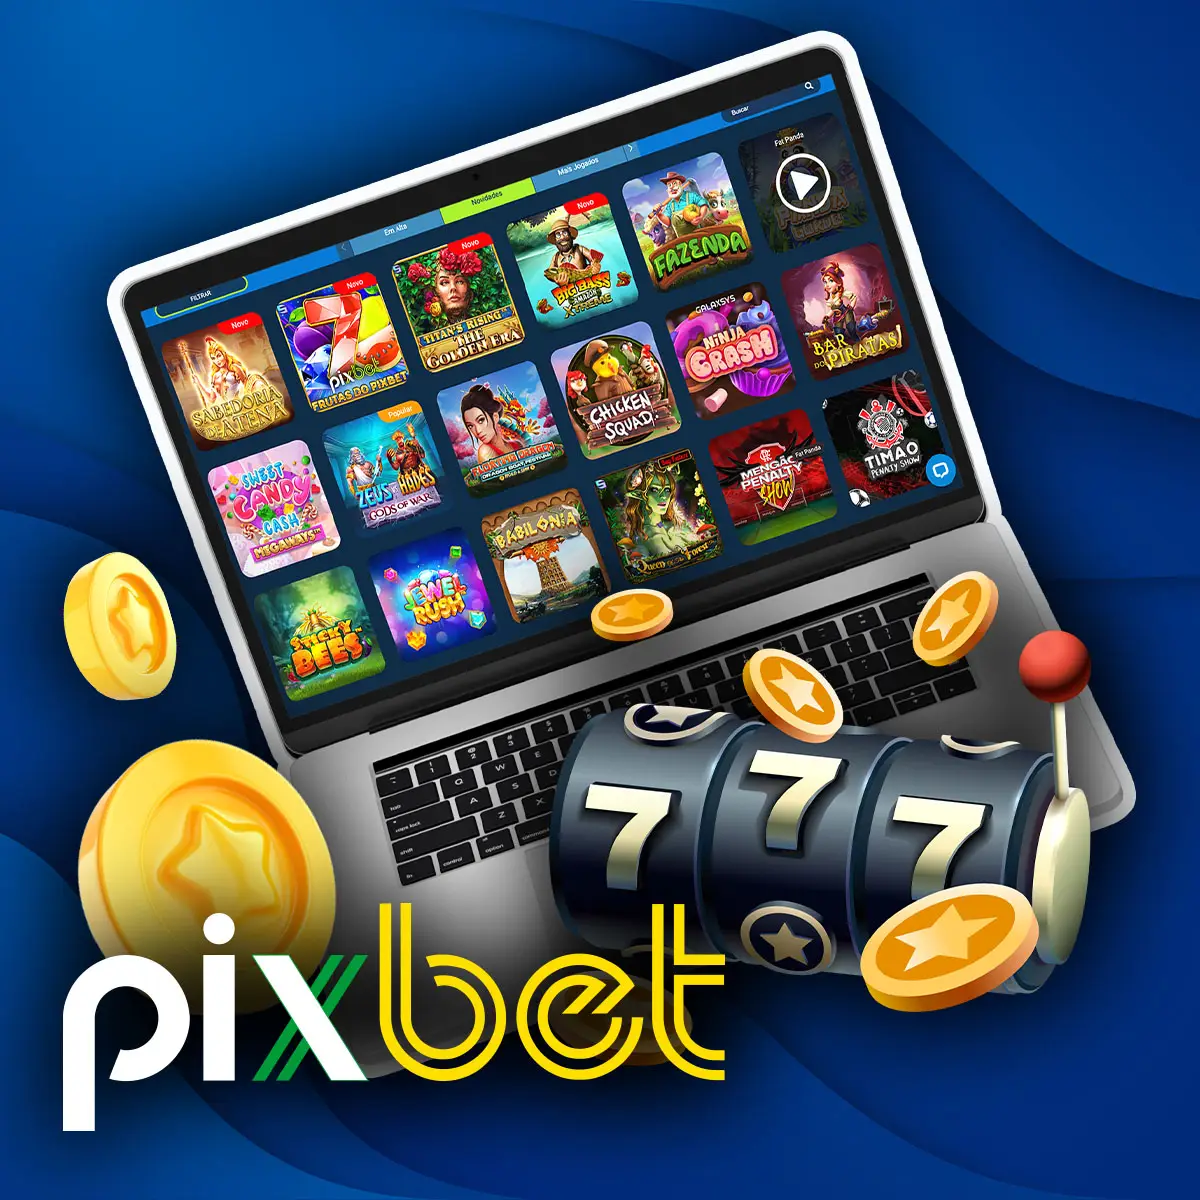 Jogos slots na casa de apostas Pixbet no Brasil